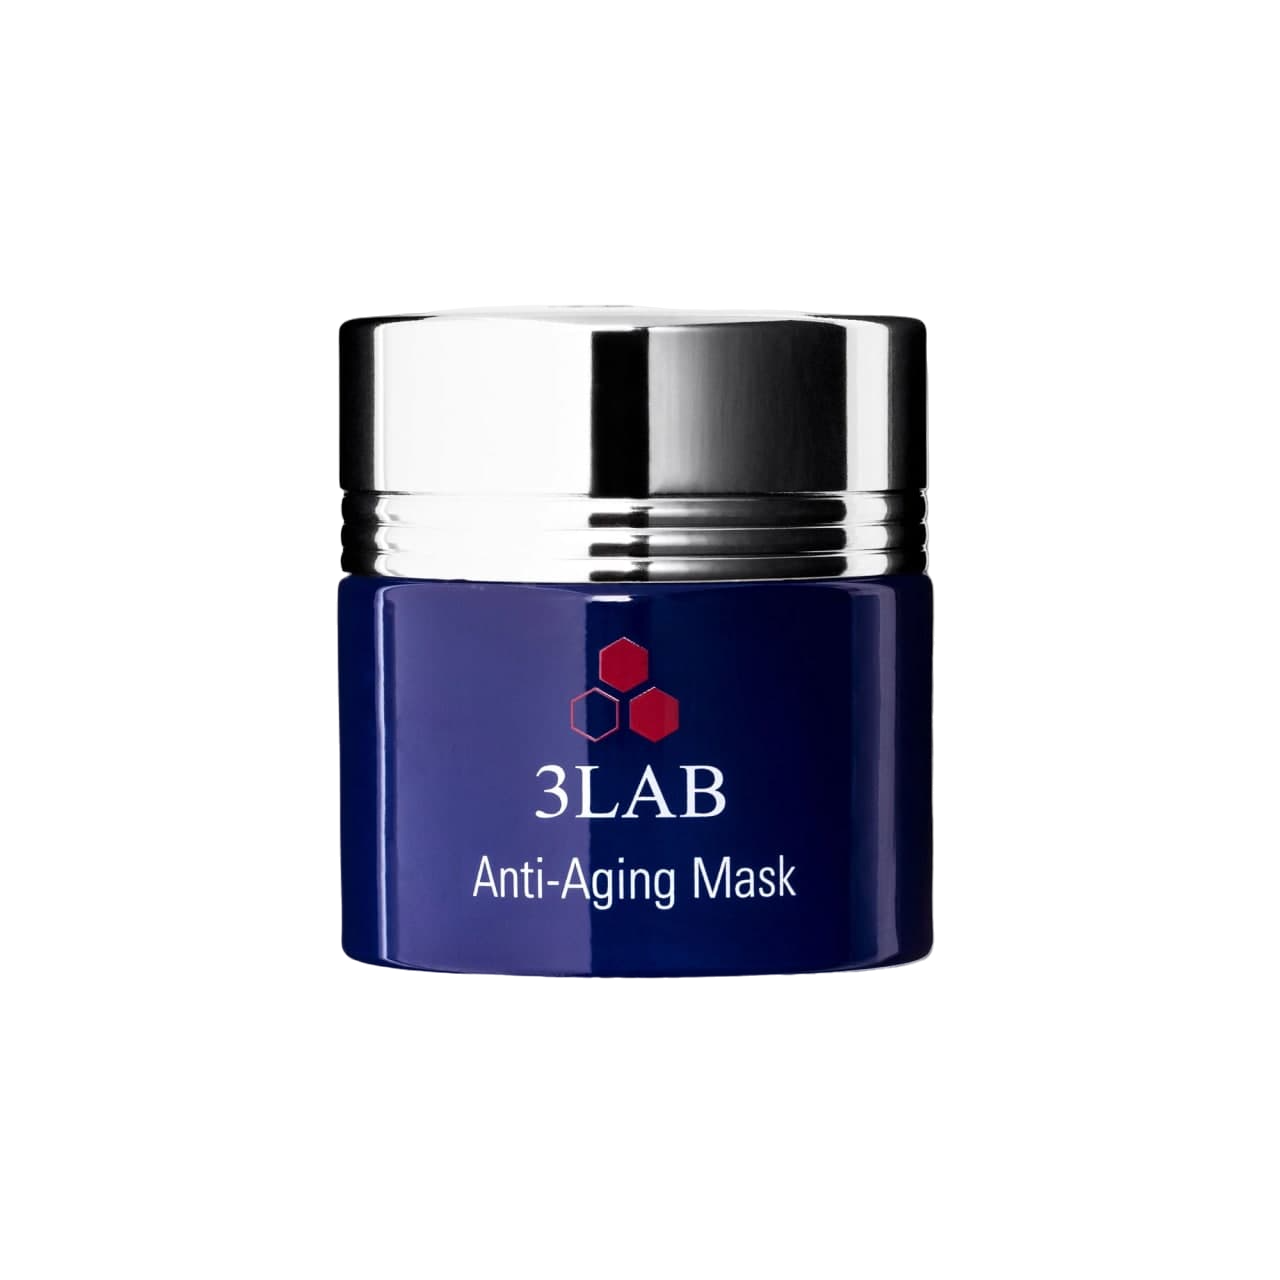 3LAB Anti-Aging Mask 60ml - интернет-магазин профессиональной косметики Spadream, изображение 42669